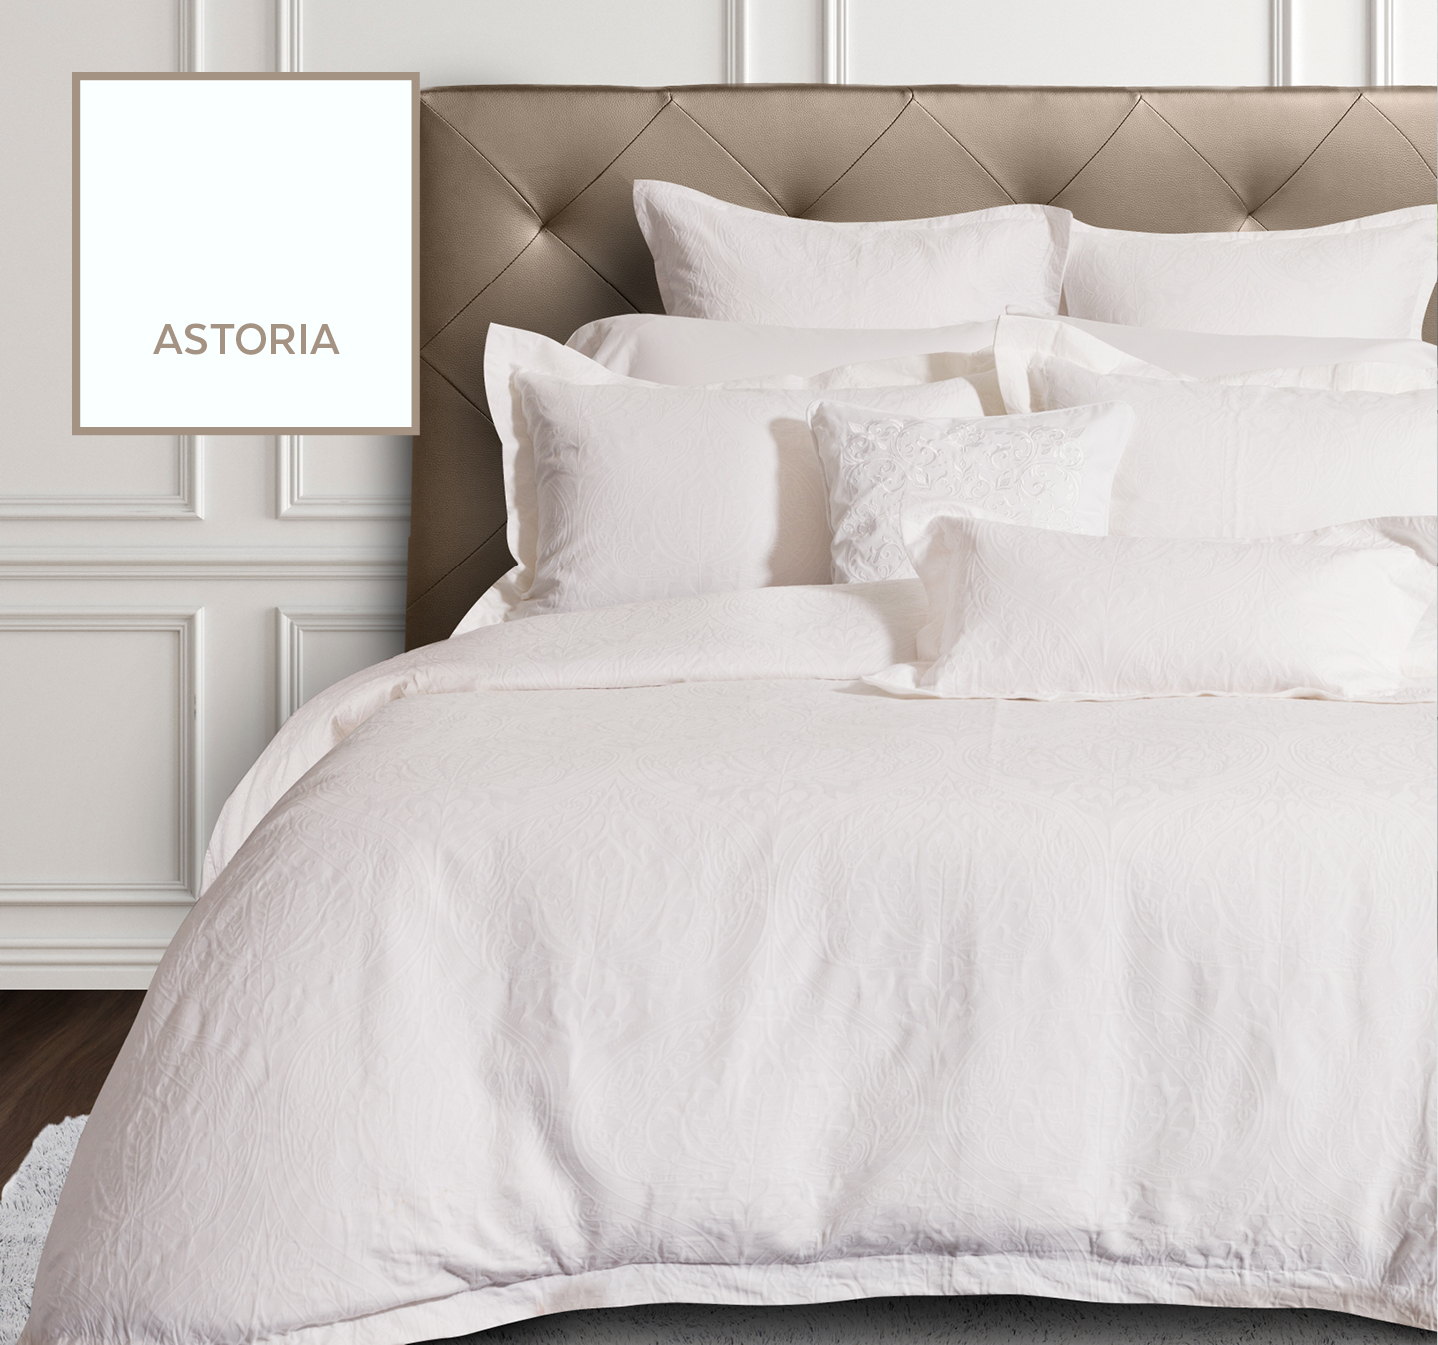 Astoria White Bedding Collection